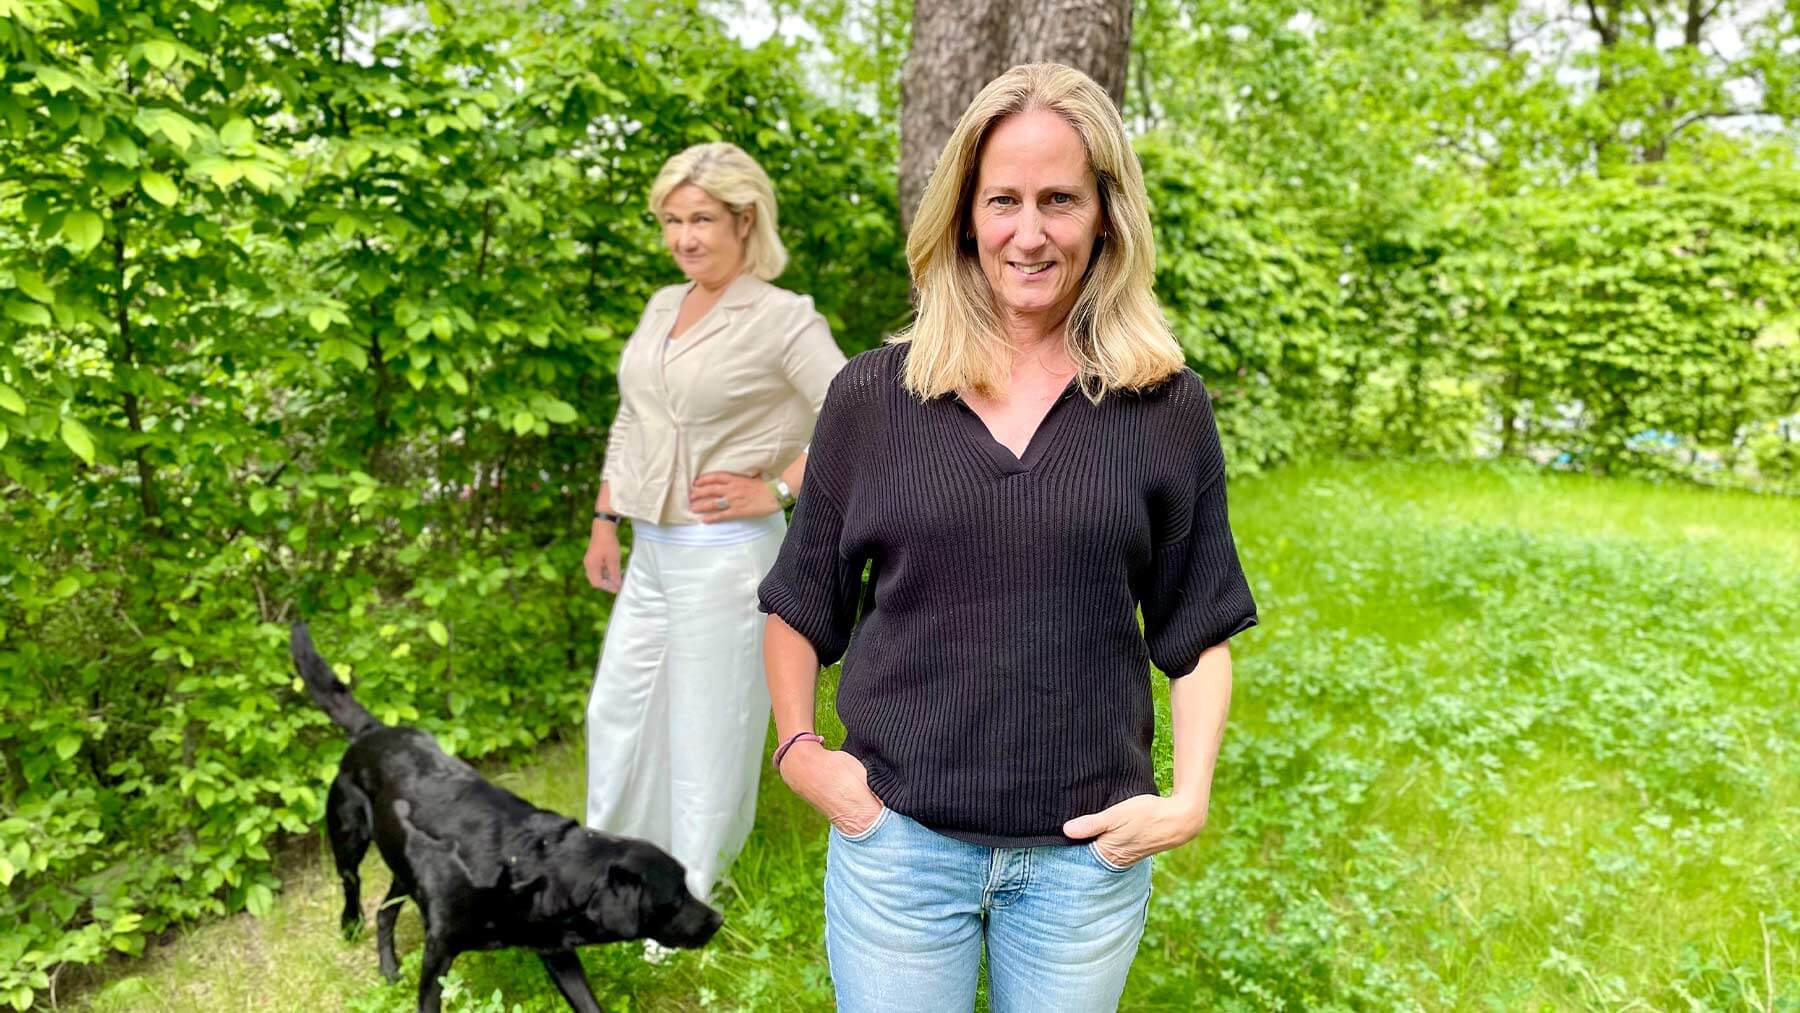 Katarina Ageborg i förgrunden och Cissi Elwin i bakgrunden. De står ute i en trädgård och vid Cissi står Katarinas svarta hund.